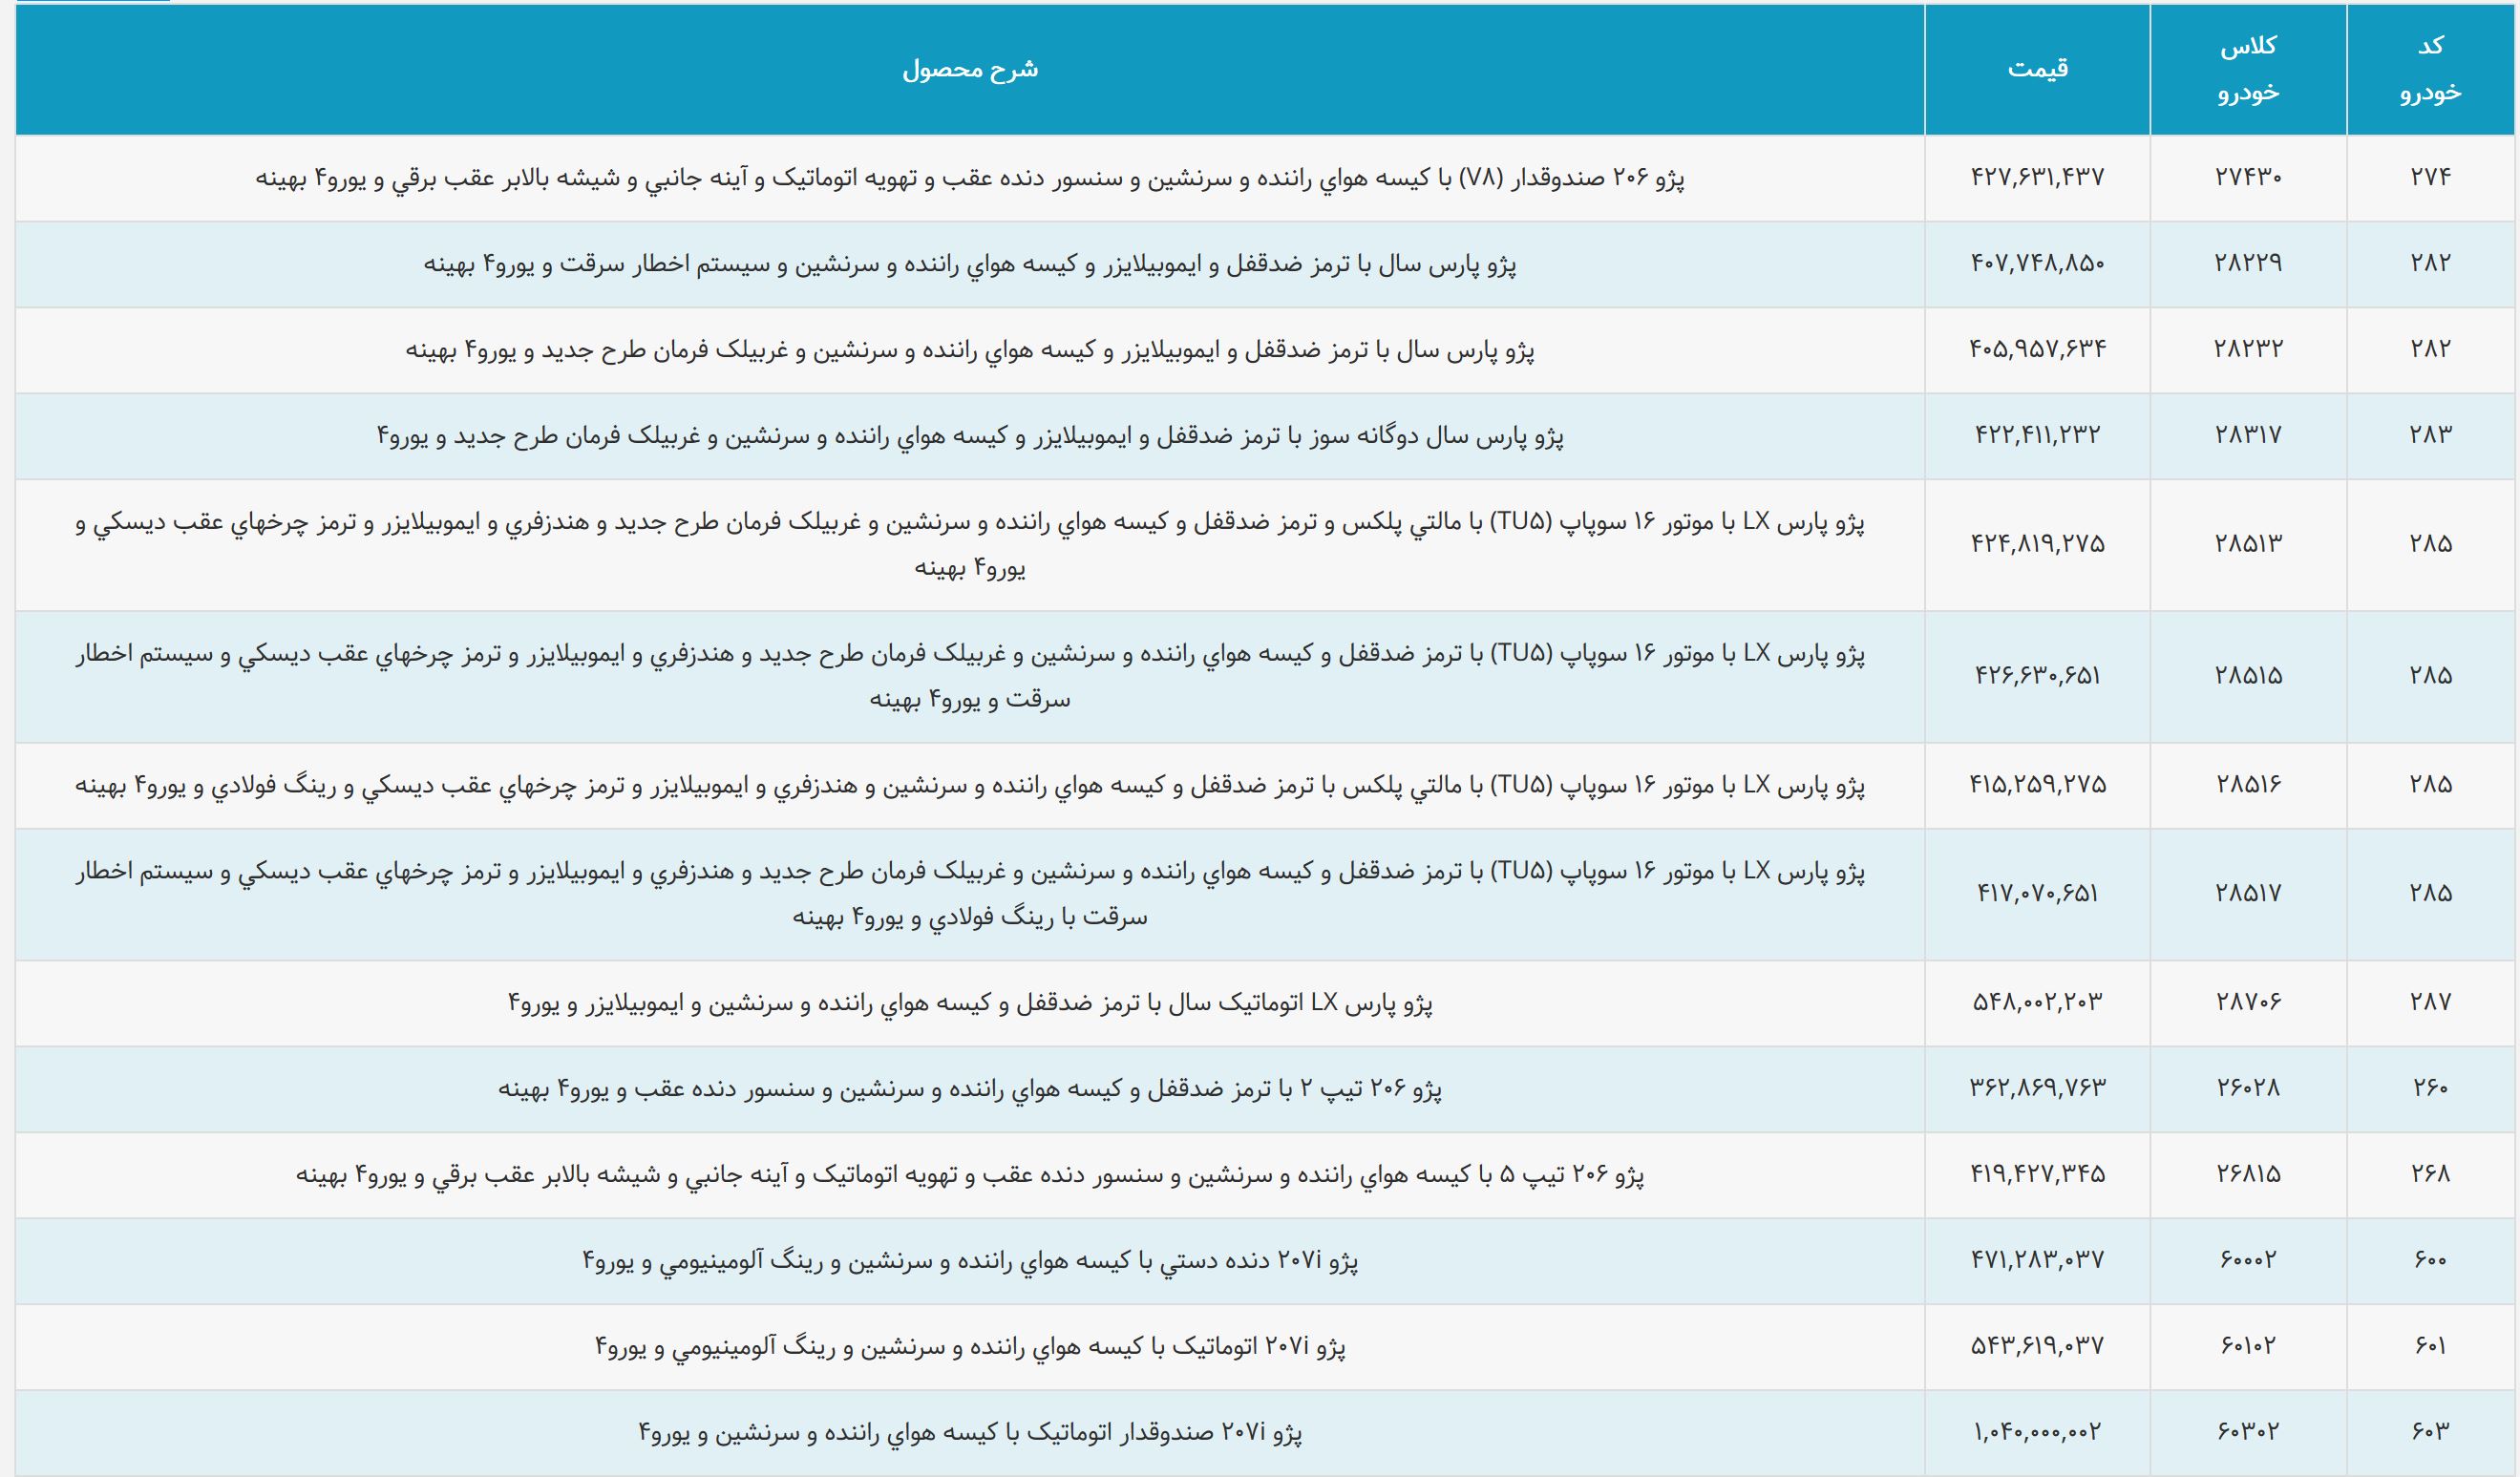 لیست قیمت محصولات ایران خودرو آذر 97